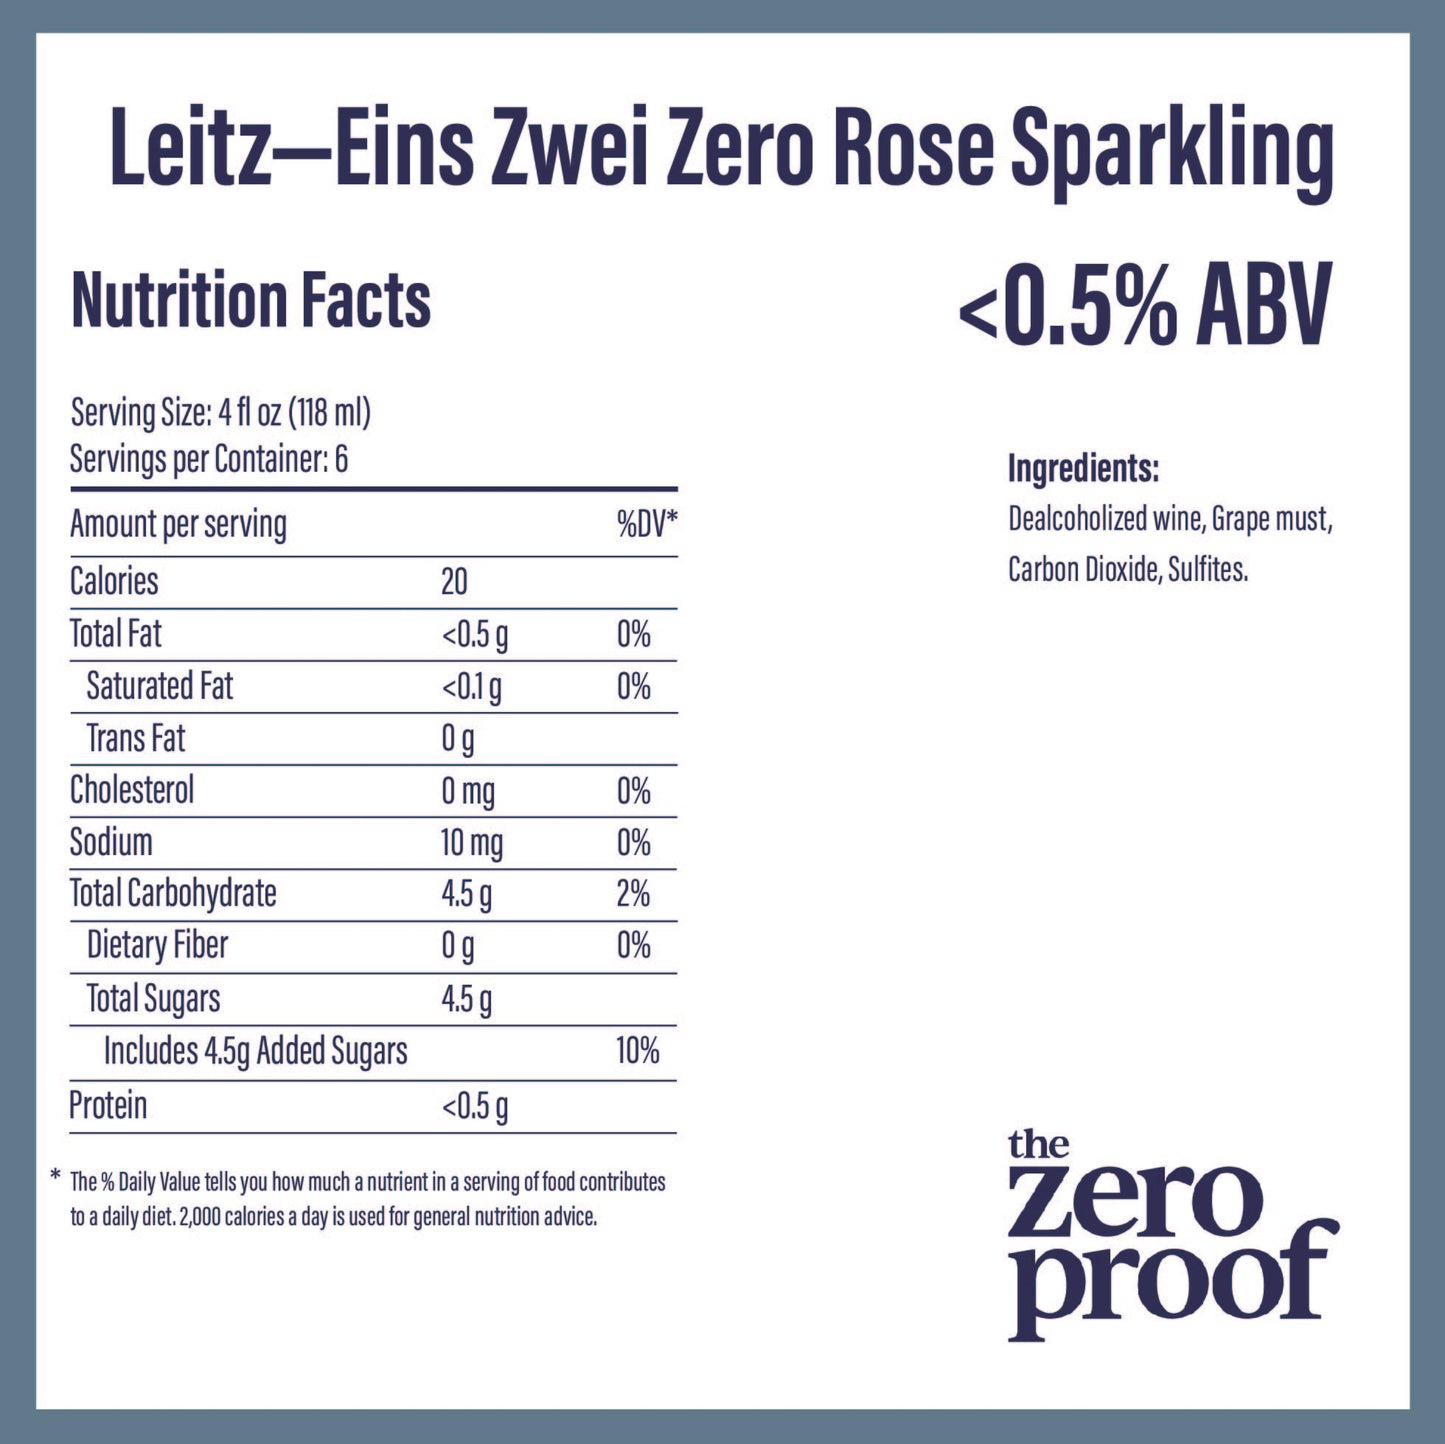 Leitz - Eins Zwei Zero Rose Sparkling